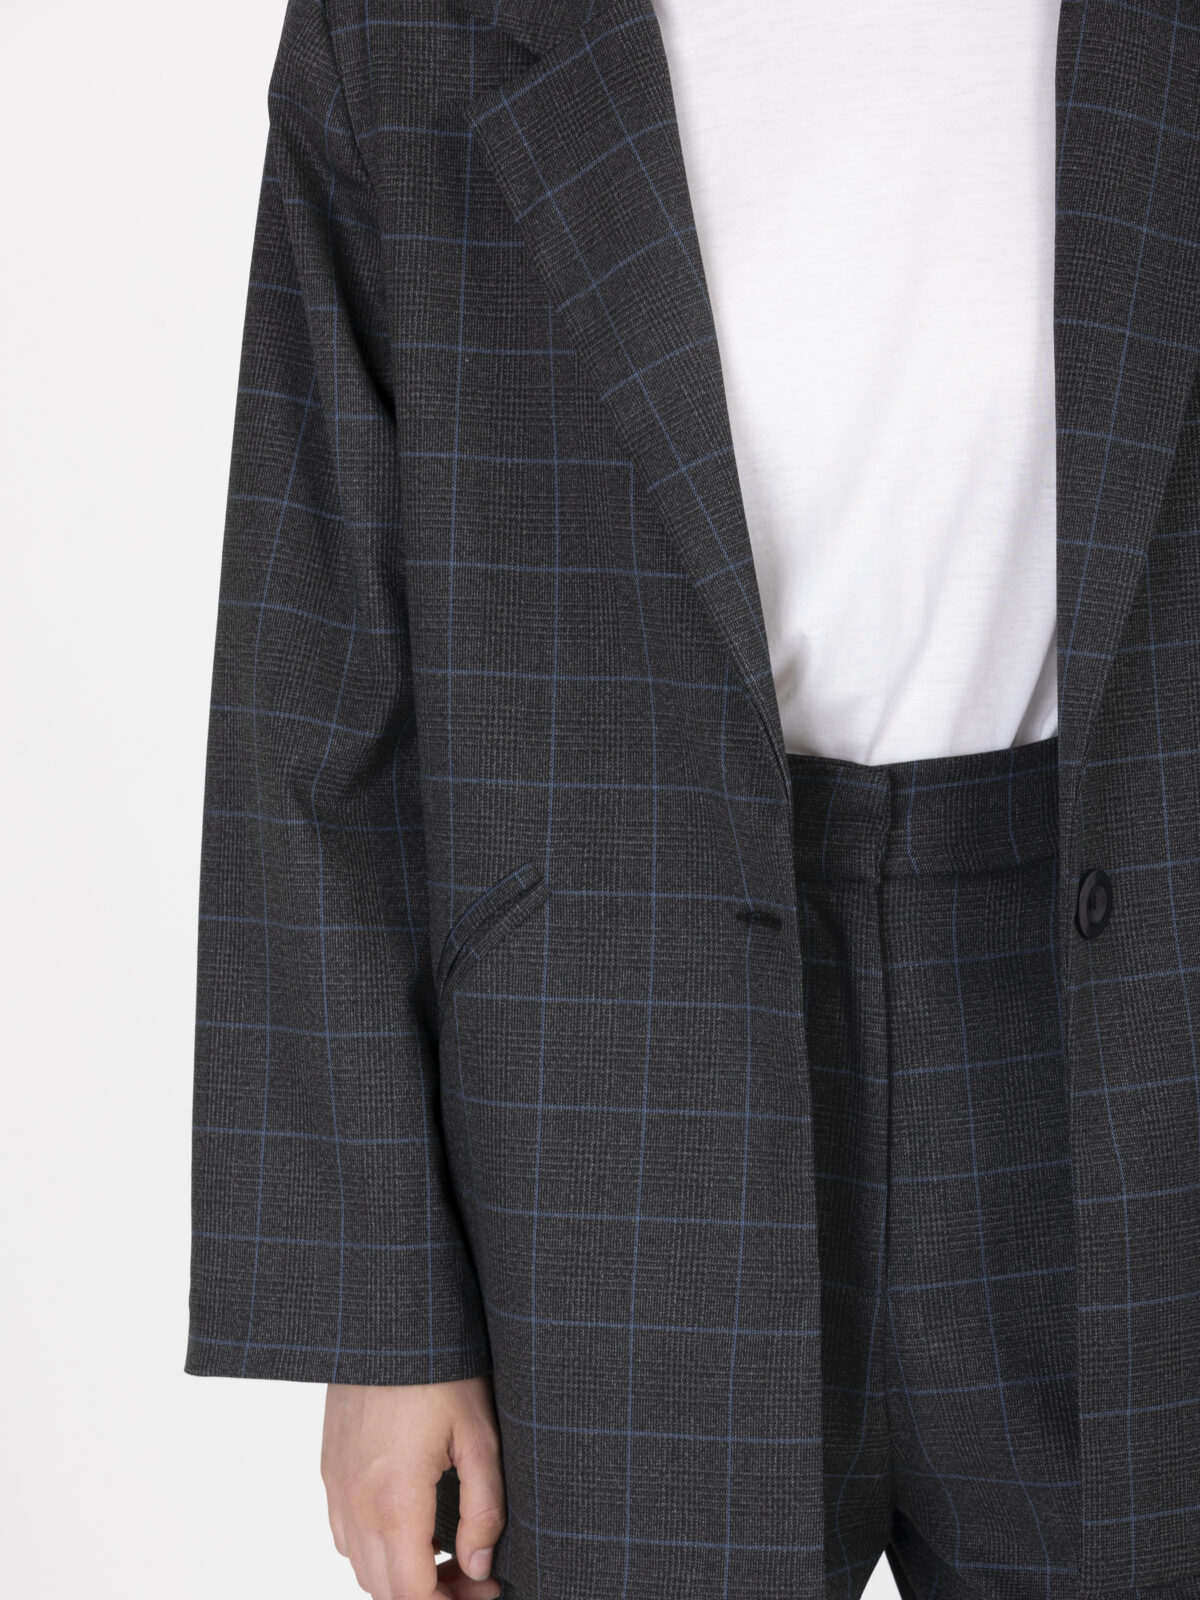 miiam-checked-jacket-wool-oversized-uniforme-greek-designers-matchboxathens